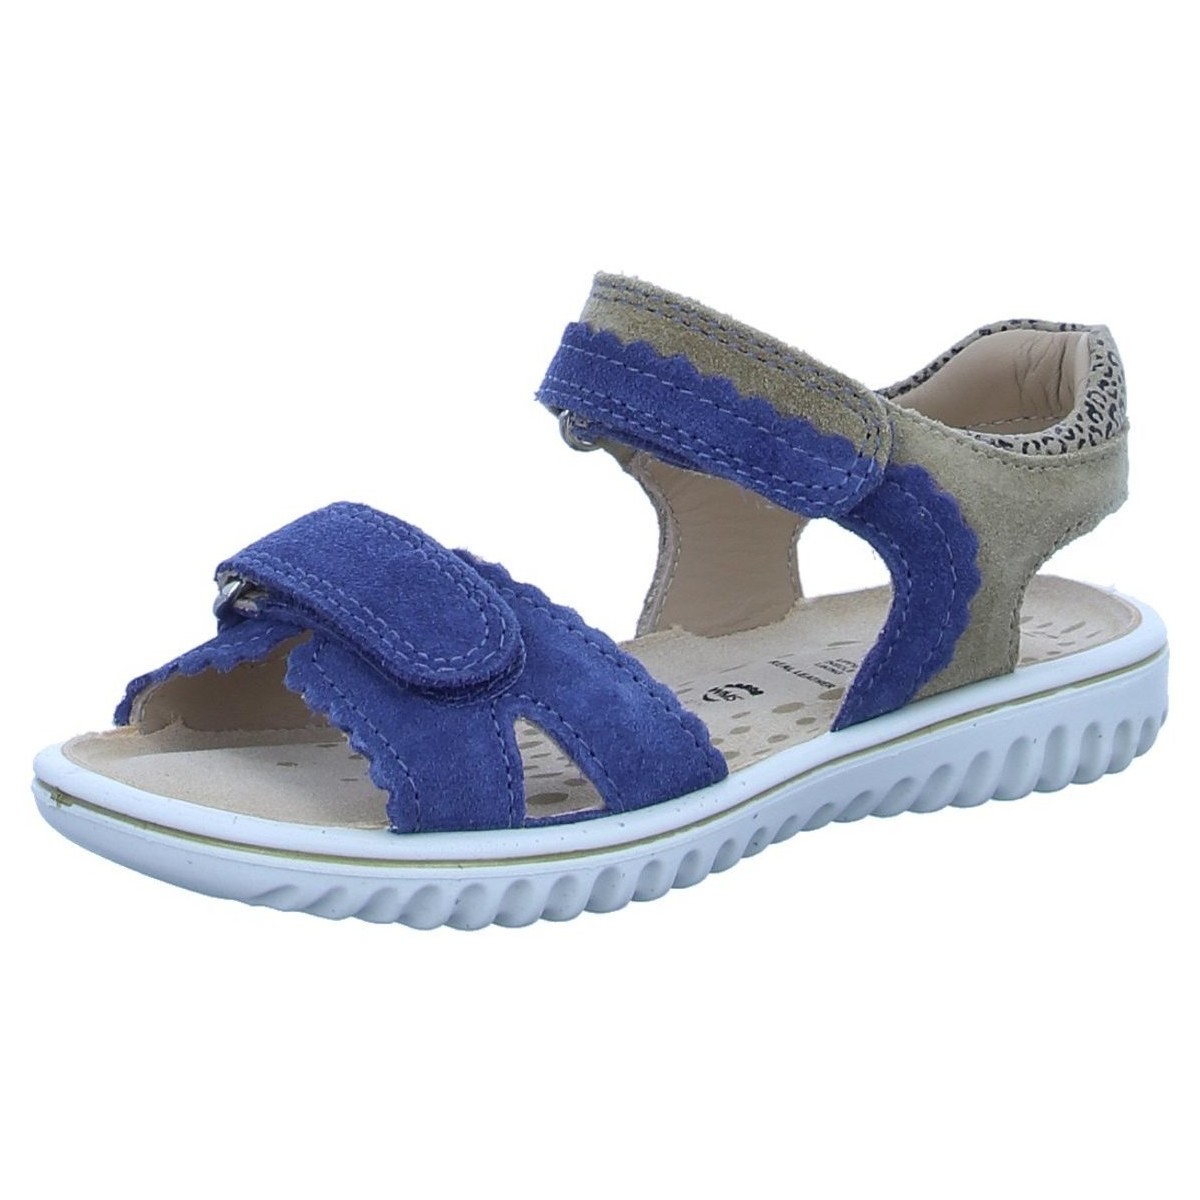 Chaussures Fille Sandales et Nu-pieds Superfit  Bleu